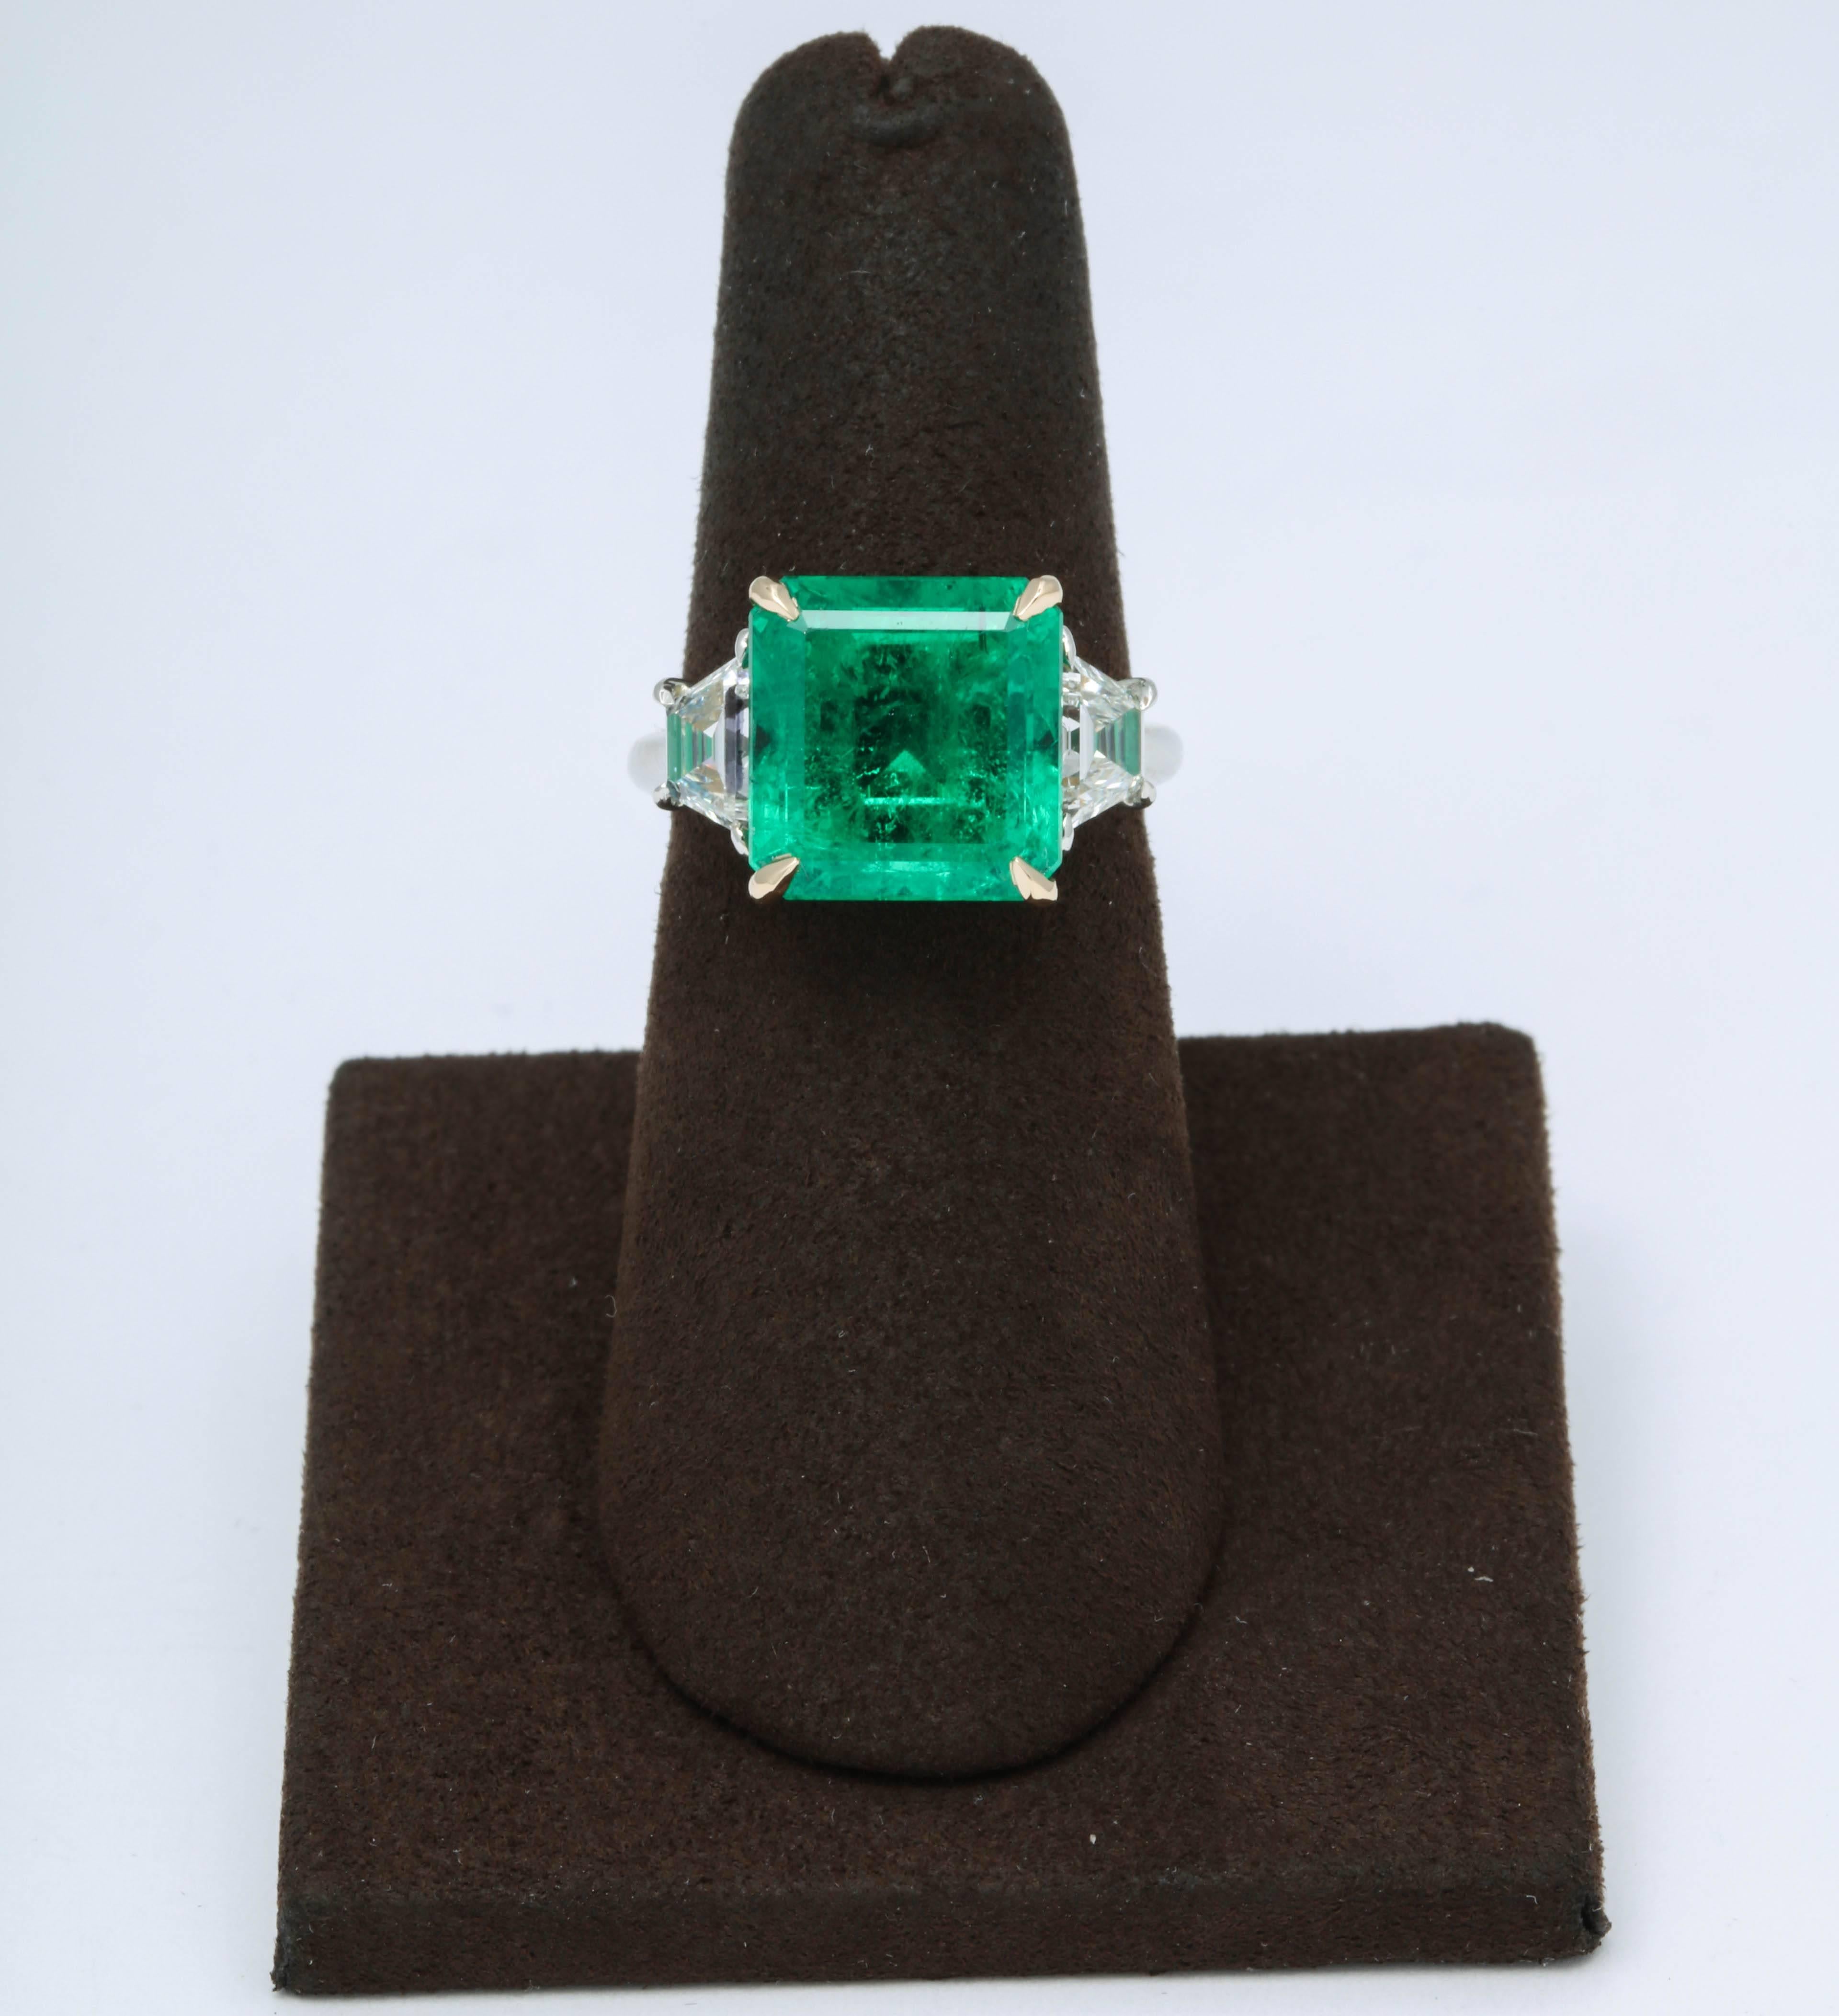 
Ein sehr feiner Smaragd Ring - hervorragende Farbe und Glanz!

6.15 Karat GIA zertifizierter kolumbianischer Smaragd Ring F1.

In einer Fassung aus Platin und 18 Karat Gelbgold mit 1,05 Karat trapezförmigen Diamanten im Stufenschliff. 

Dieser Ring